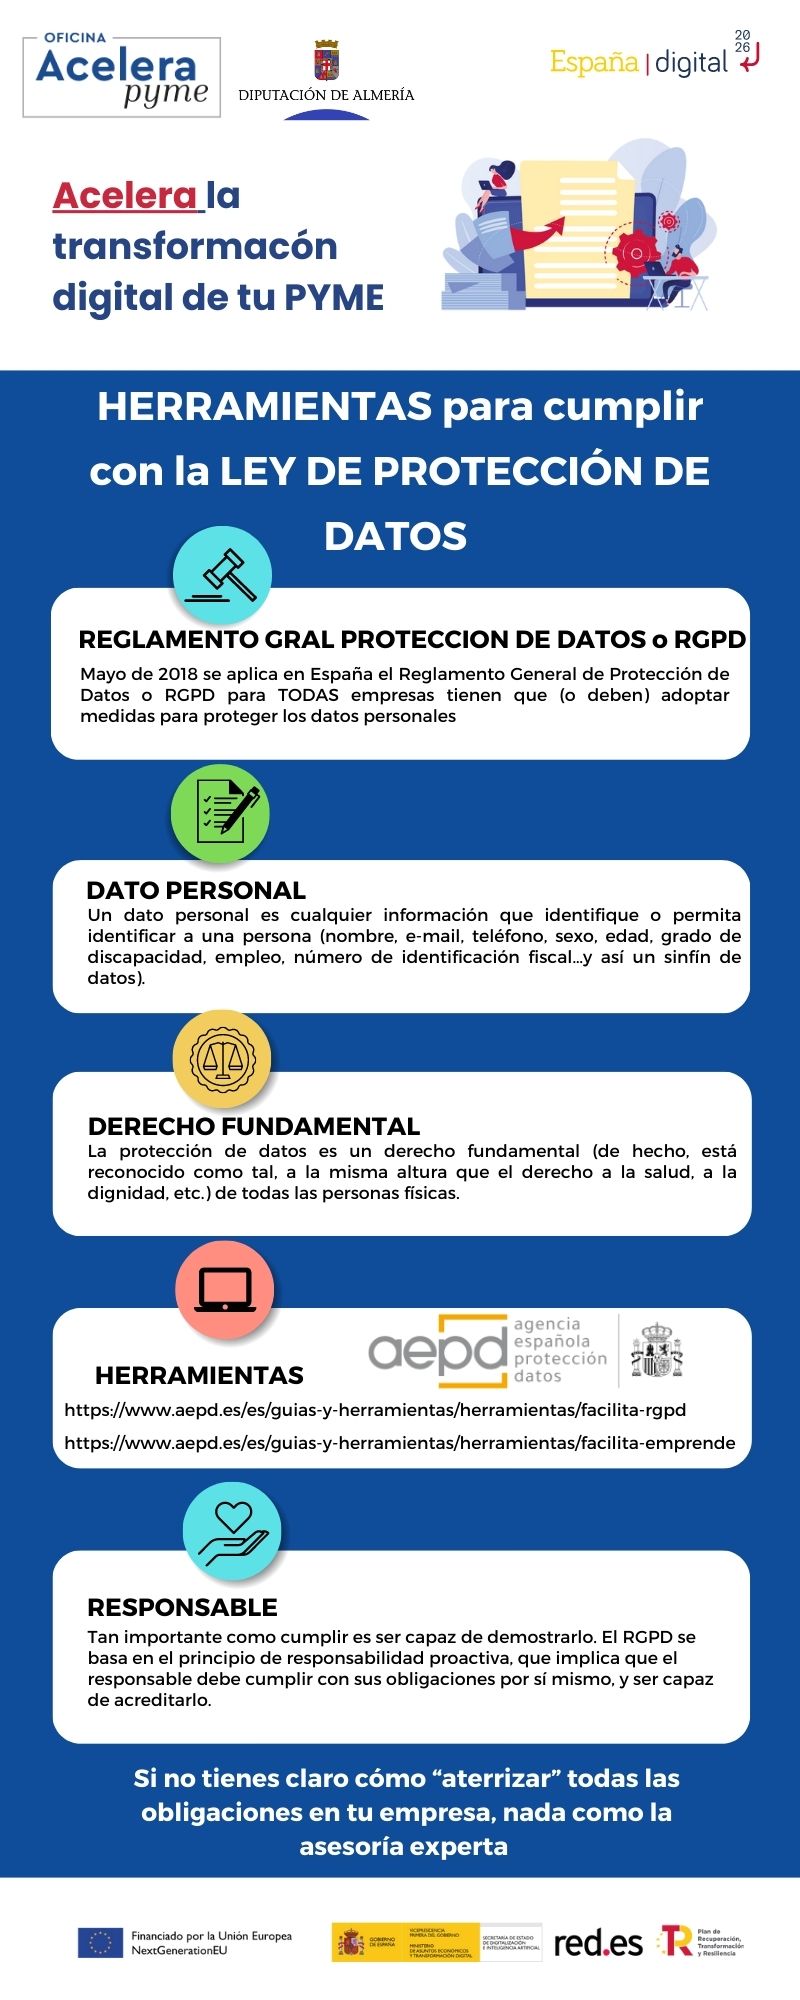 Herramientas para cumplir con la Ley de Protección de Datos